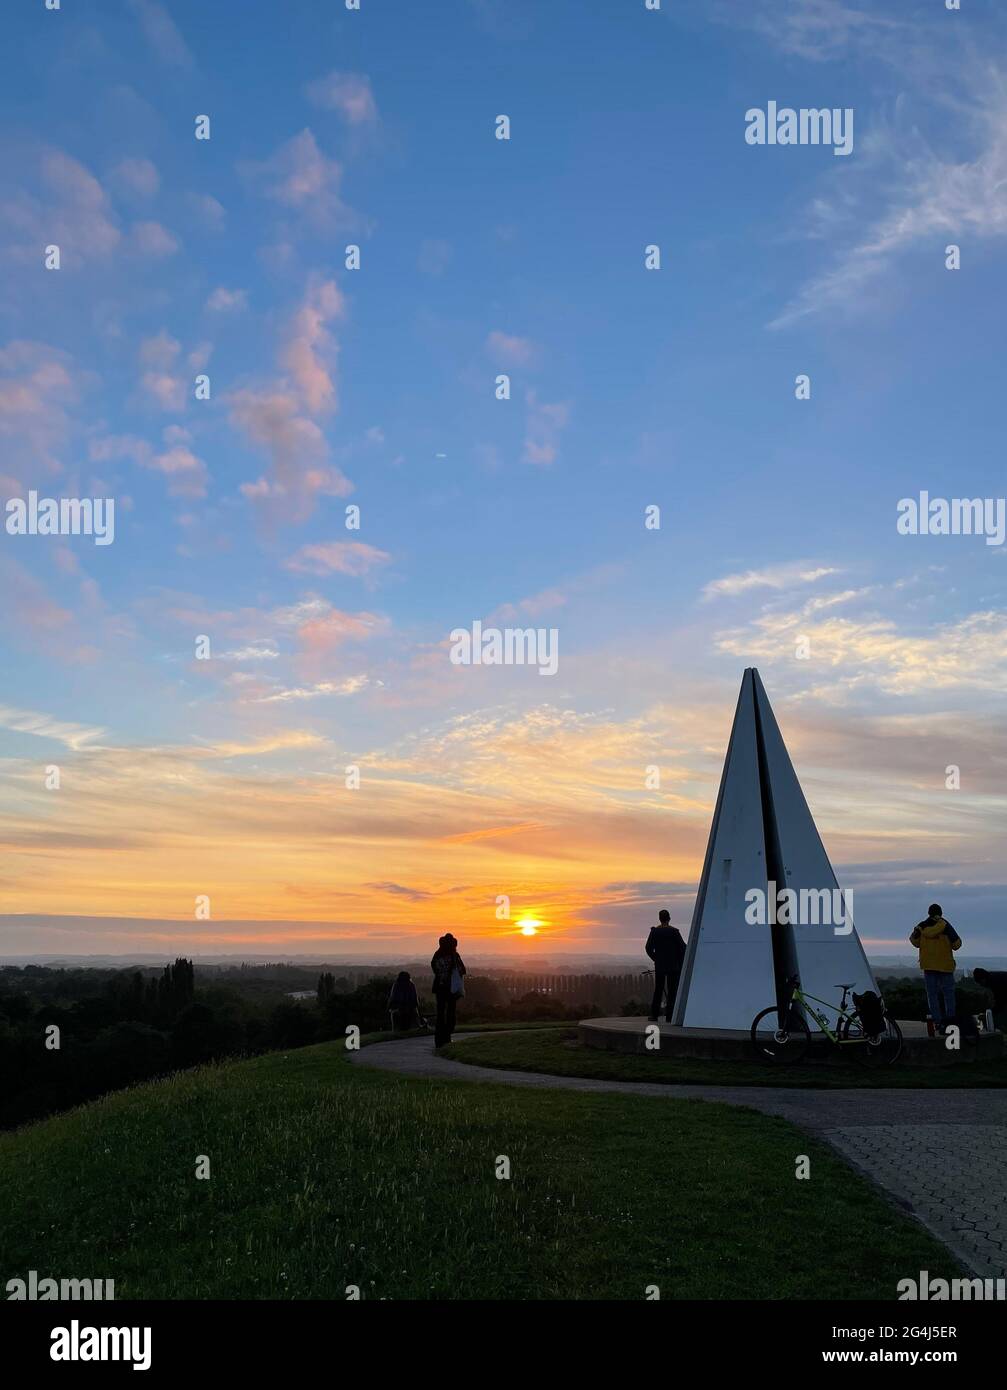 Le solstice d'été se lève au lever du soleil à la Pyramide lumière à Campbell Park, Milton Keynes. Les personnes de cette image ne sont pas identifiables. Banque D'Images